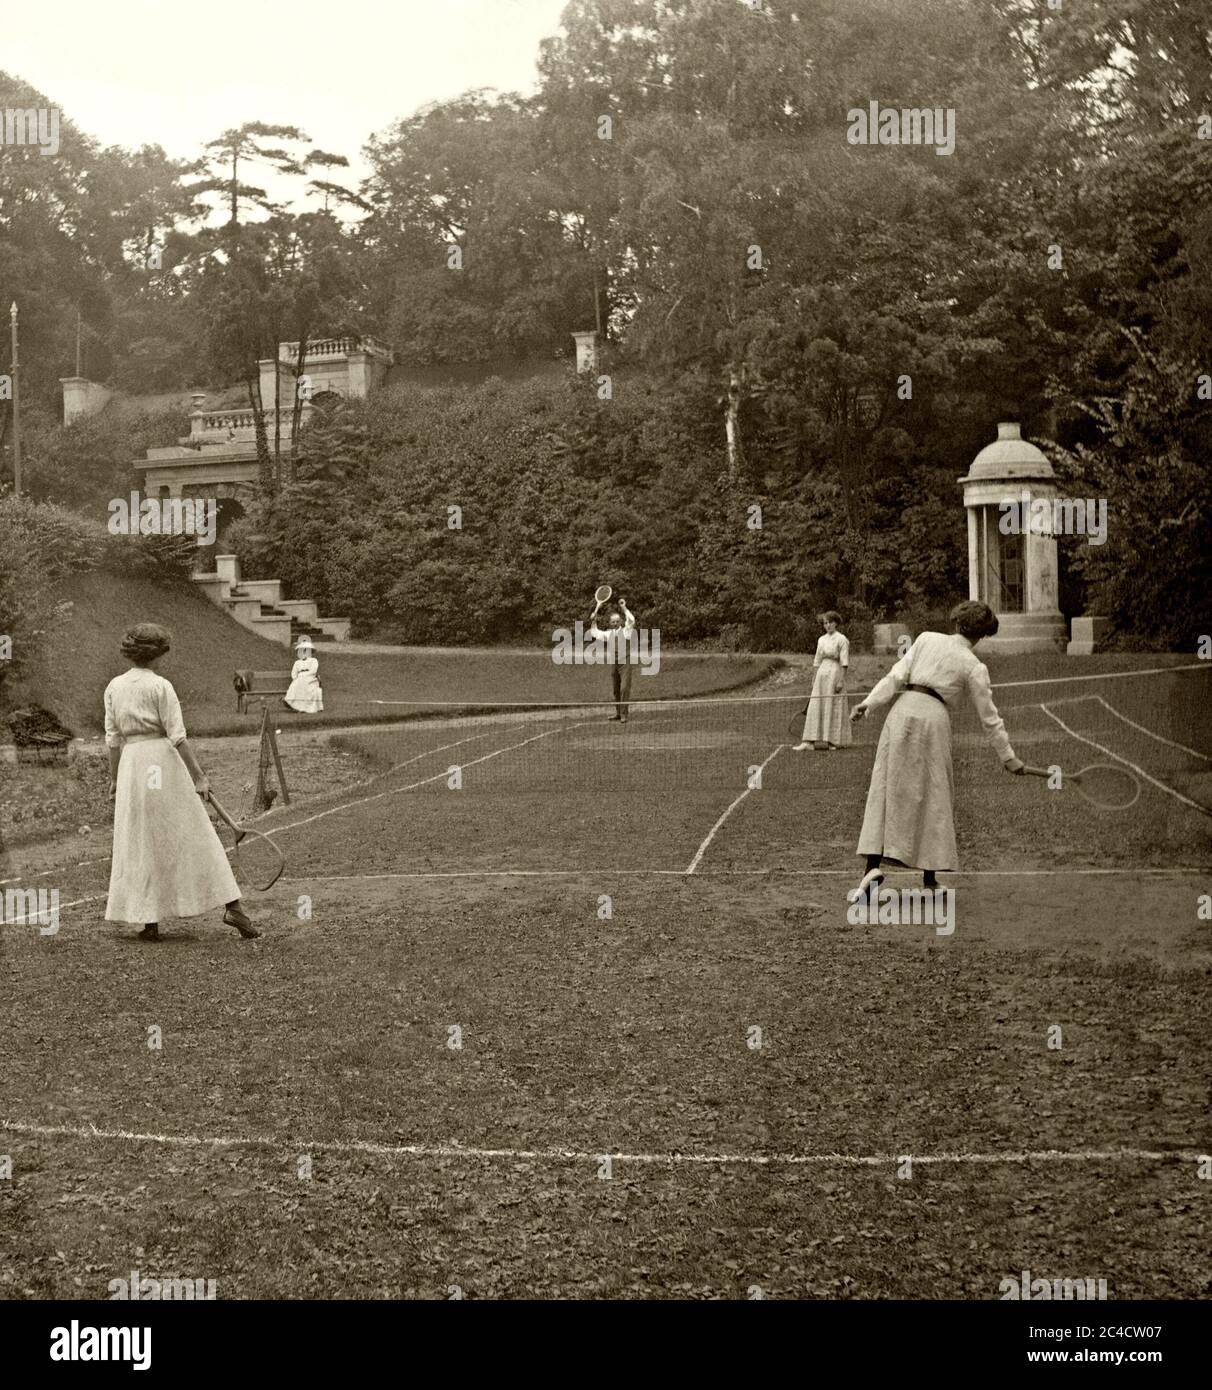 Ein vornehmendes Tennisspiel in Großbritannien um 1900 – ein Mann und drei Damen spielen in einem Landhaus/Herrschaftsgarten auf einem sehr unebenen Rasen. Der Sport sieht hier wie ein Zeitvertreib der Oberschicht aus. Stockfoto